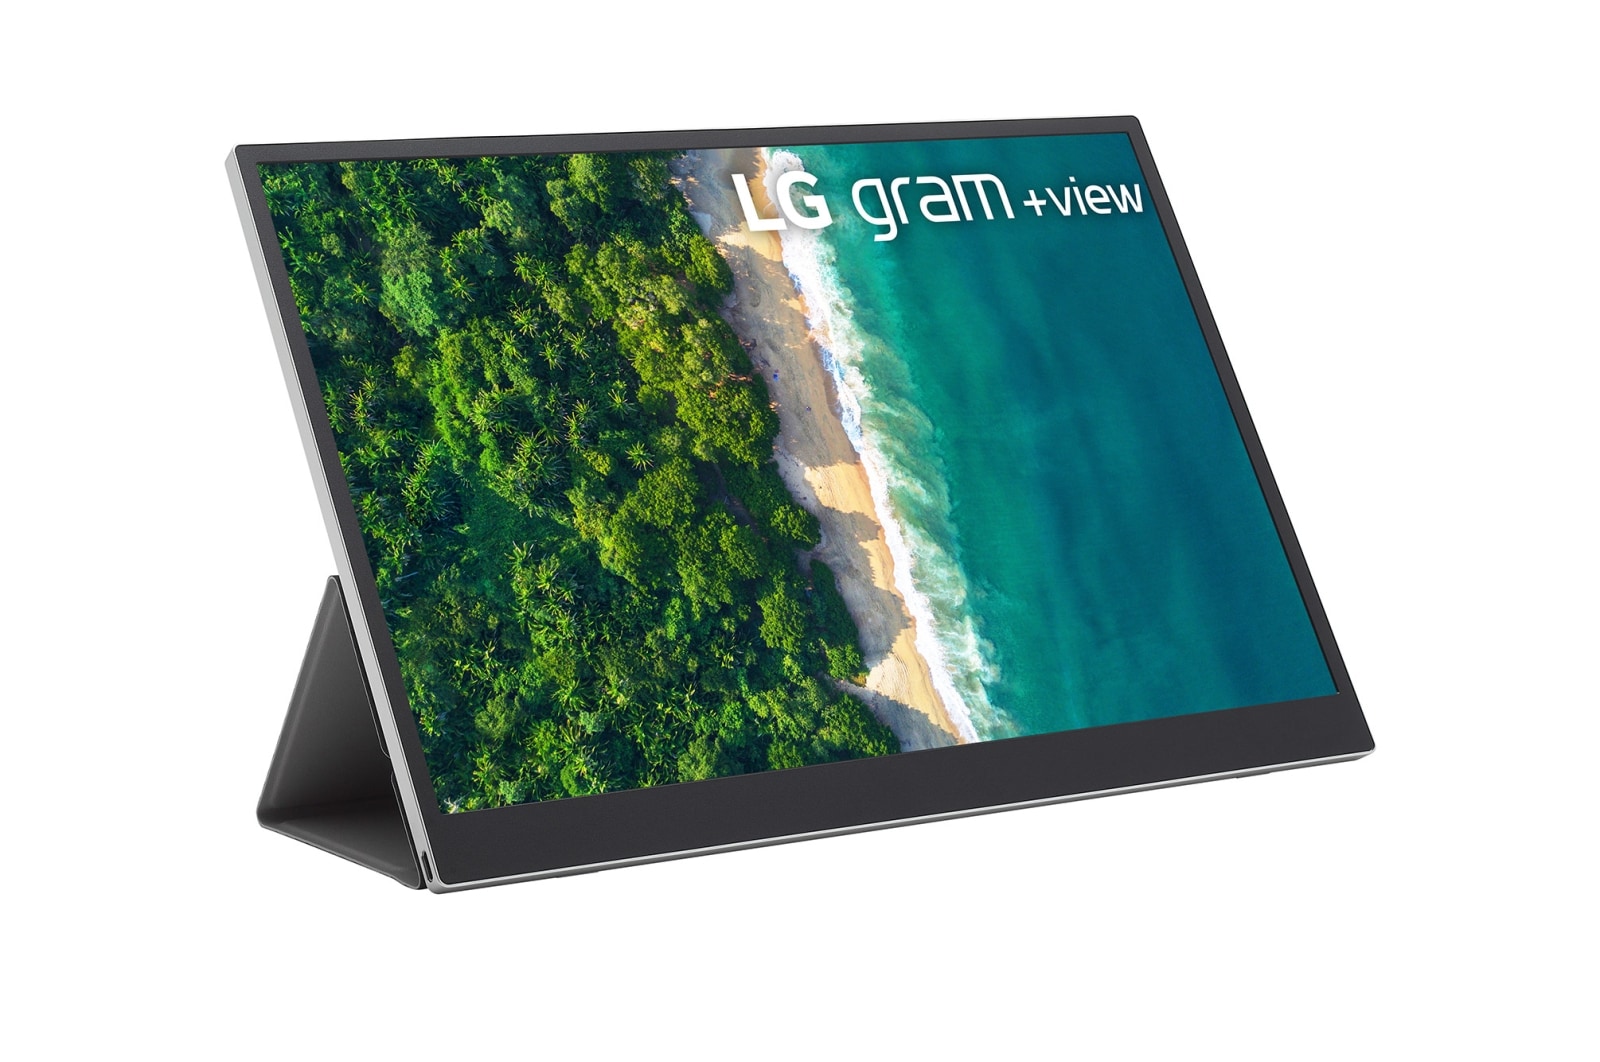 LG gram +VIEW 16 Portable Monitor - 16MQ70